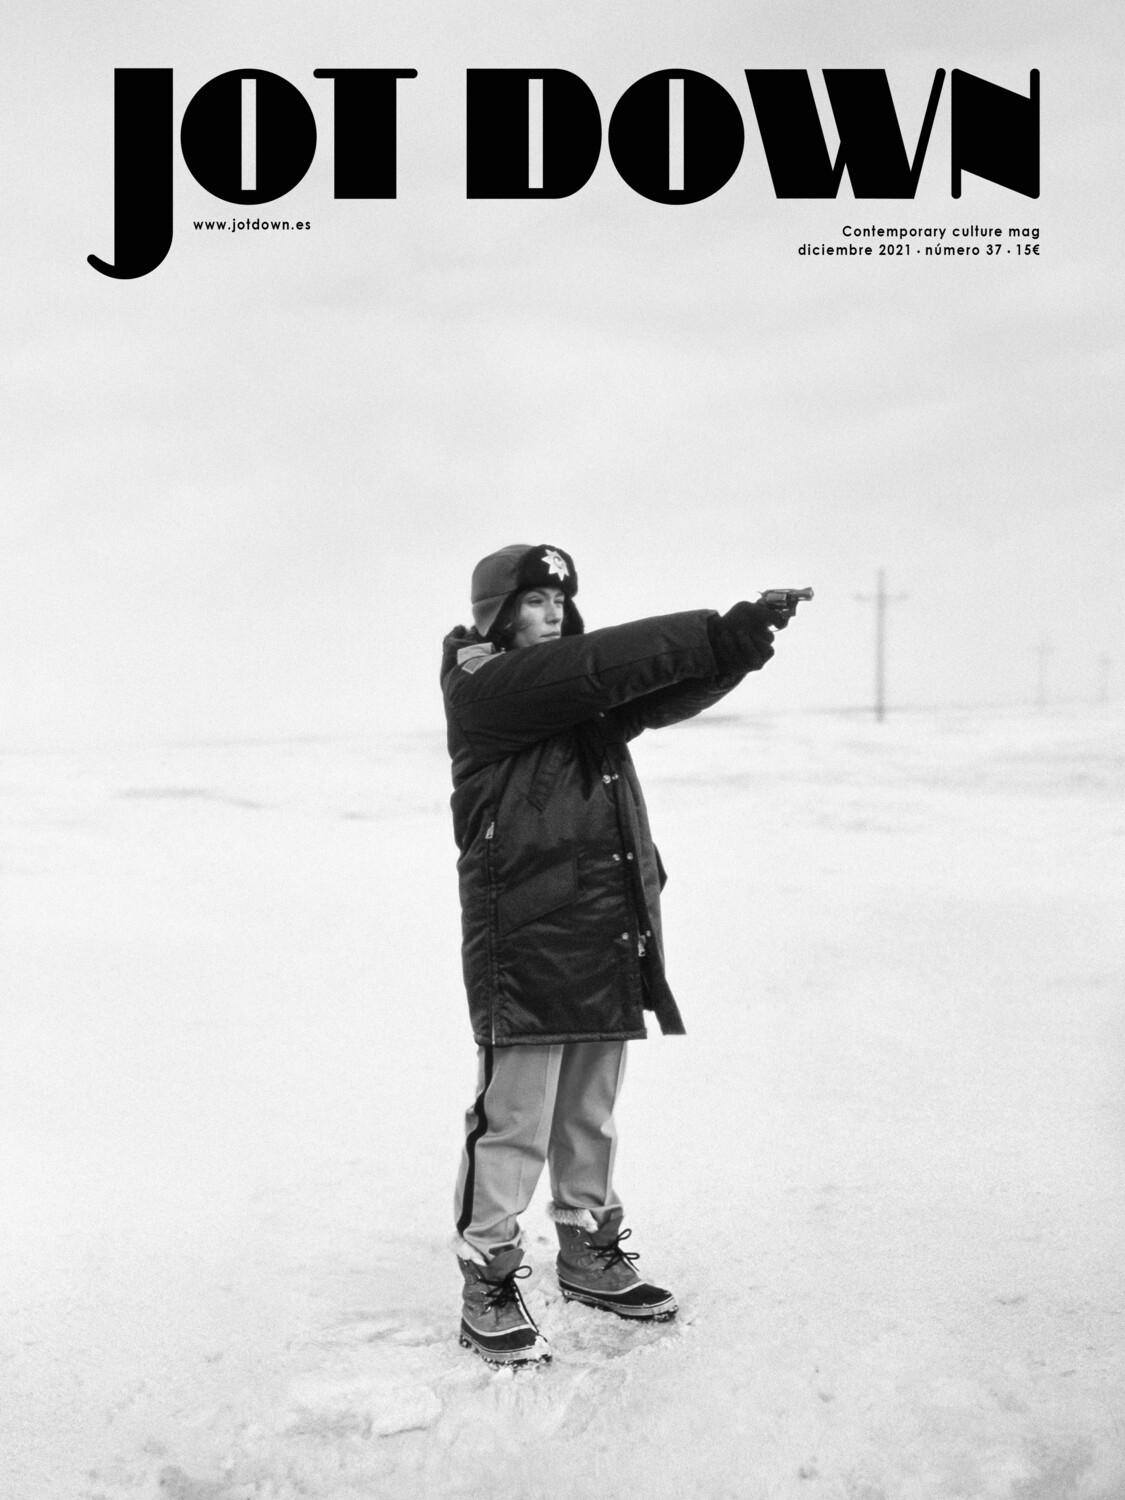 Revista Jot Down Nº37 | Diciembre 2021 "Especial «Círculos Polares»". 